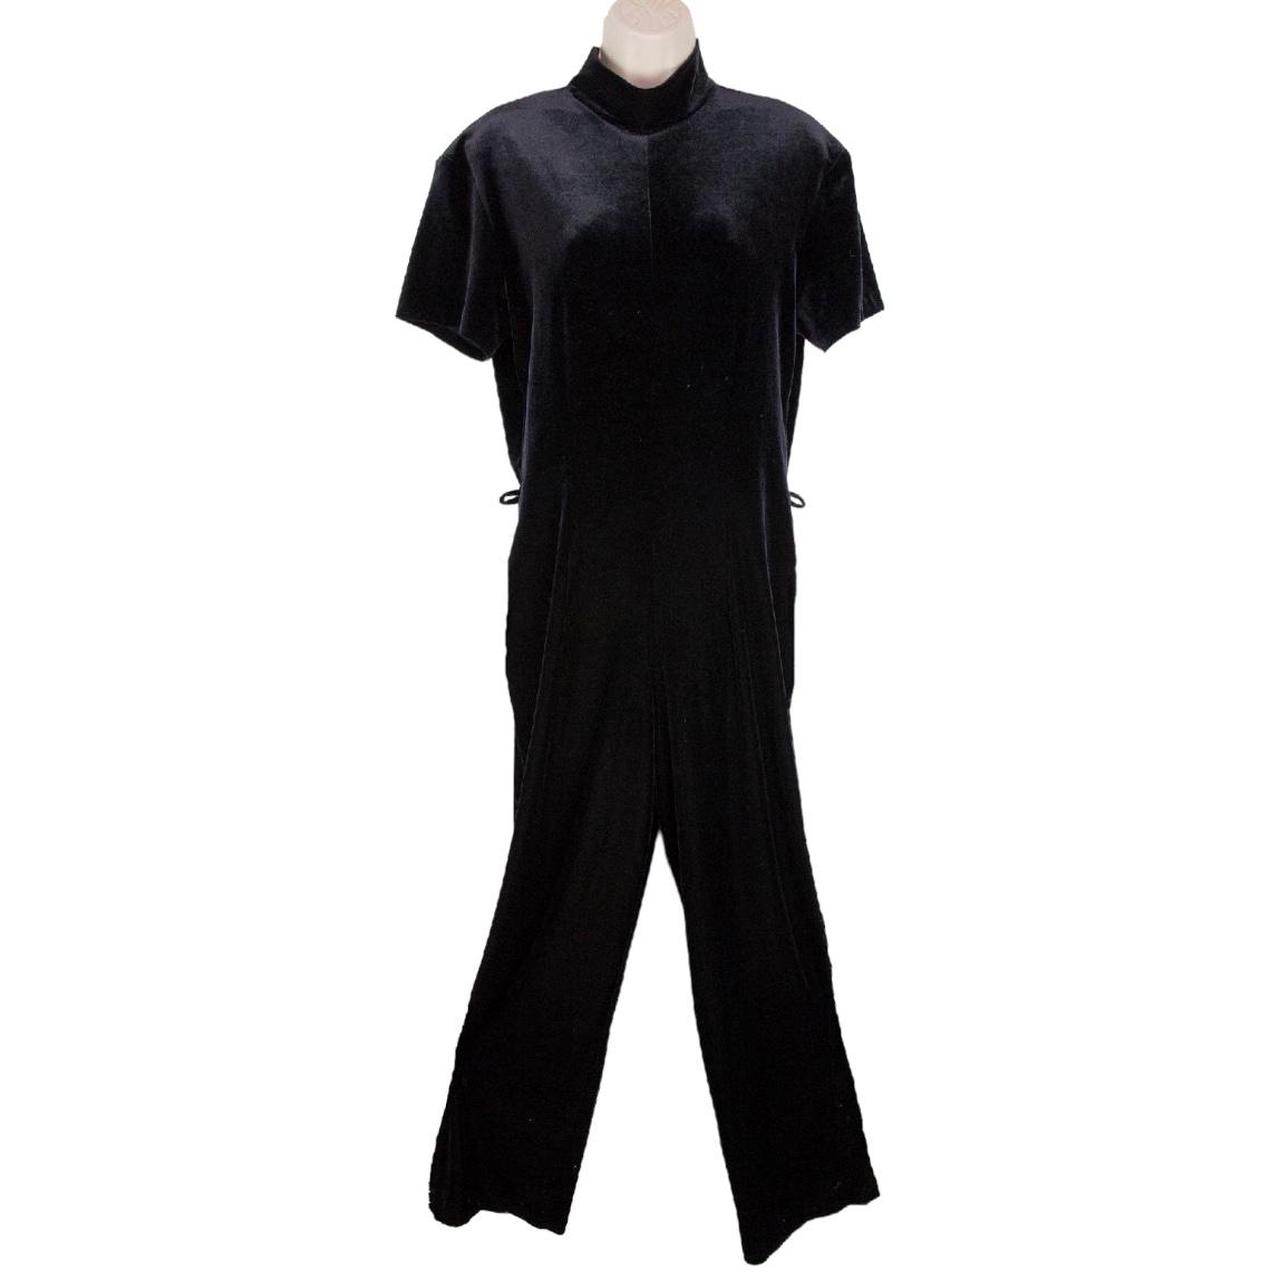 Panache Women's Black Jumpsuit (2)